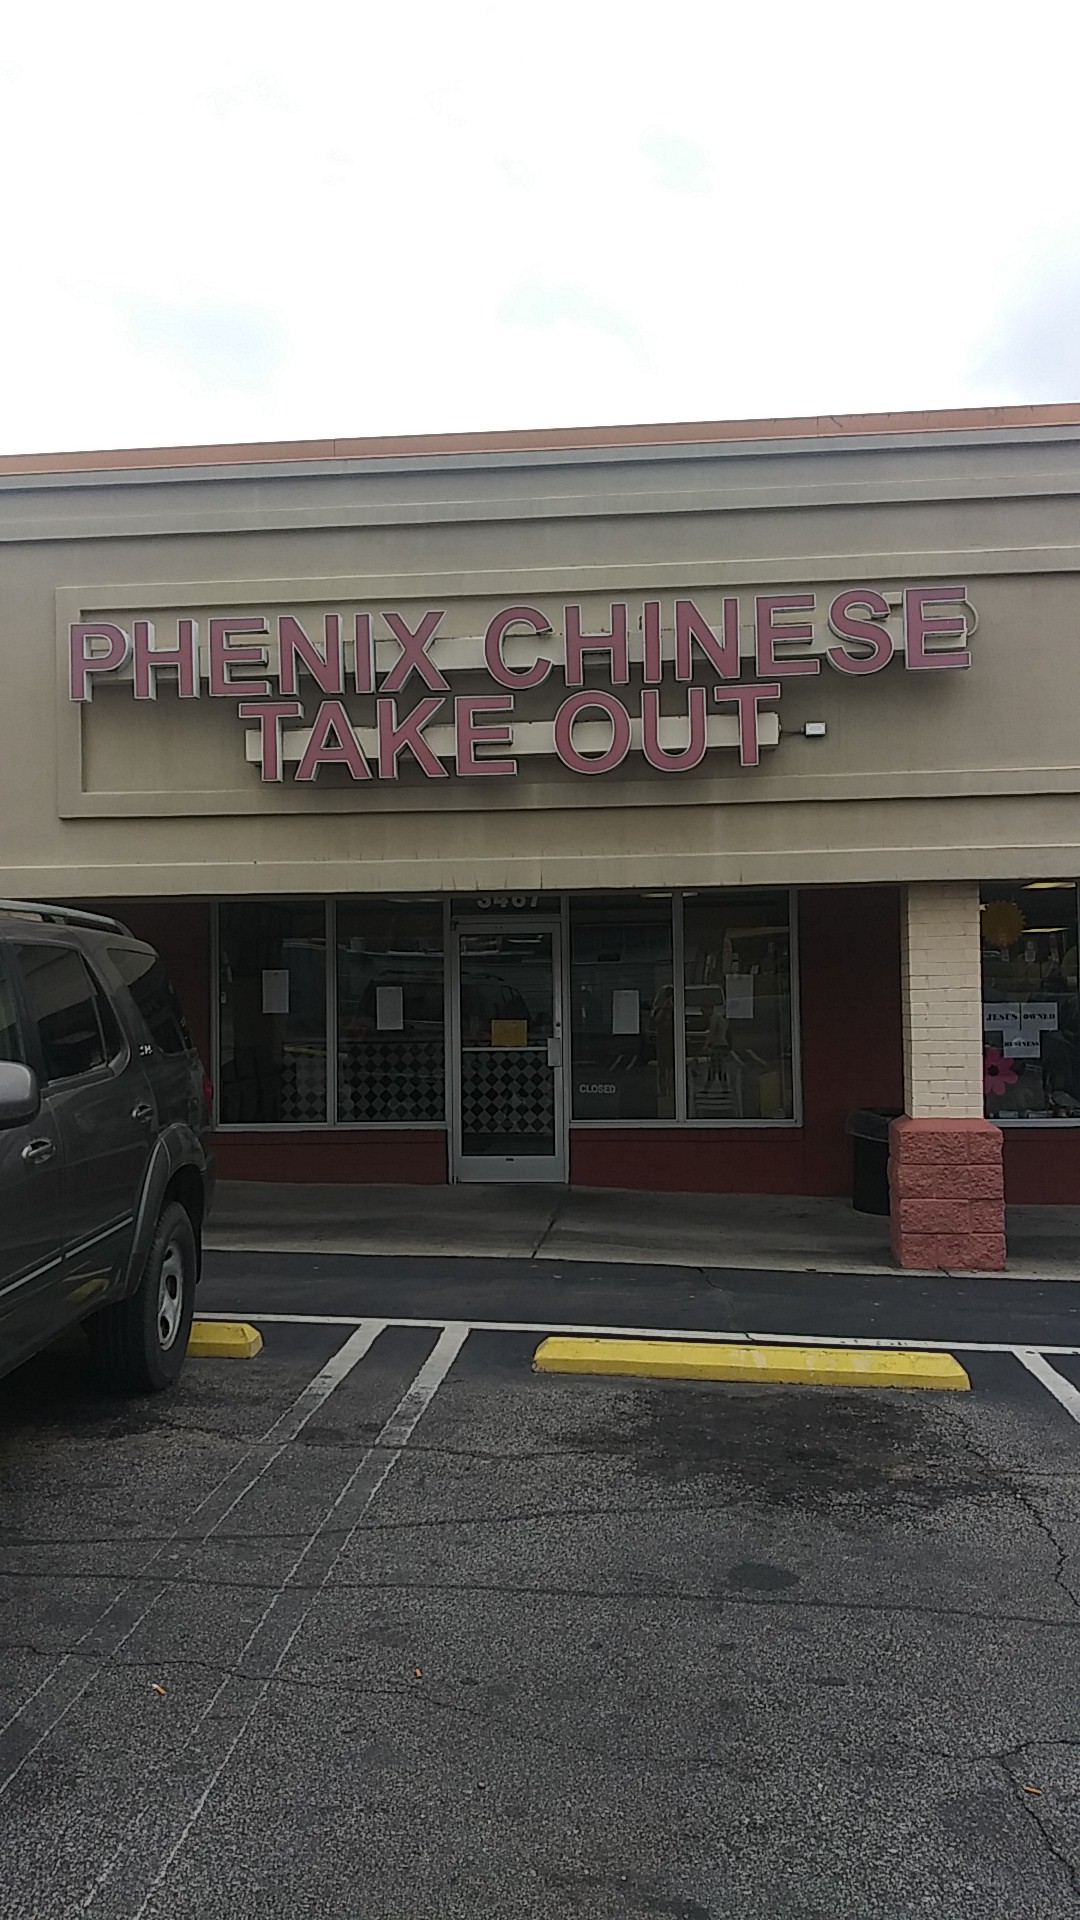 Phenix Chinese Restaurant